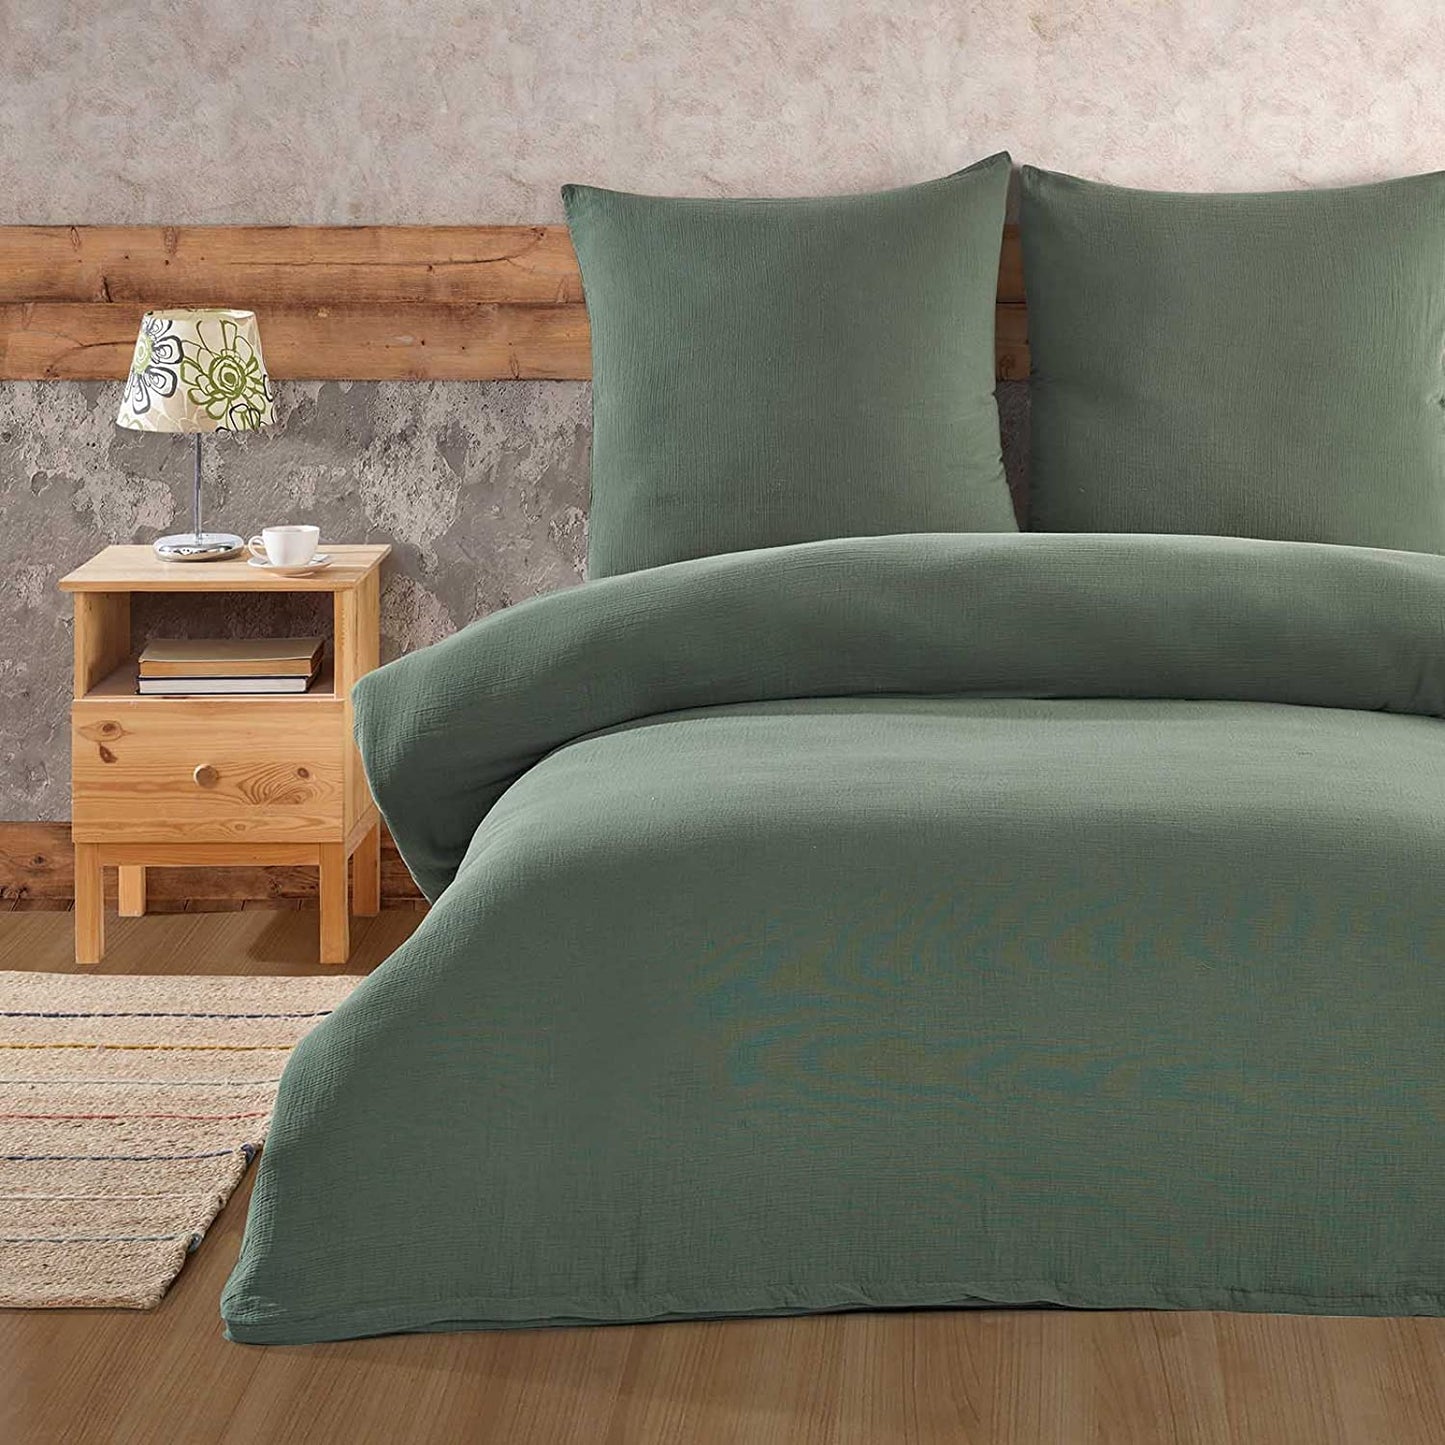 Buymax® Musselin Bettwäsche Set aus Baumwolle, Grün, 155x220 cm